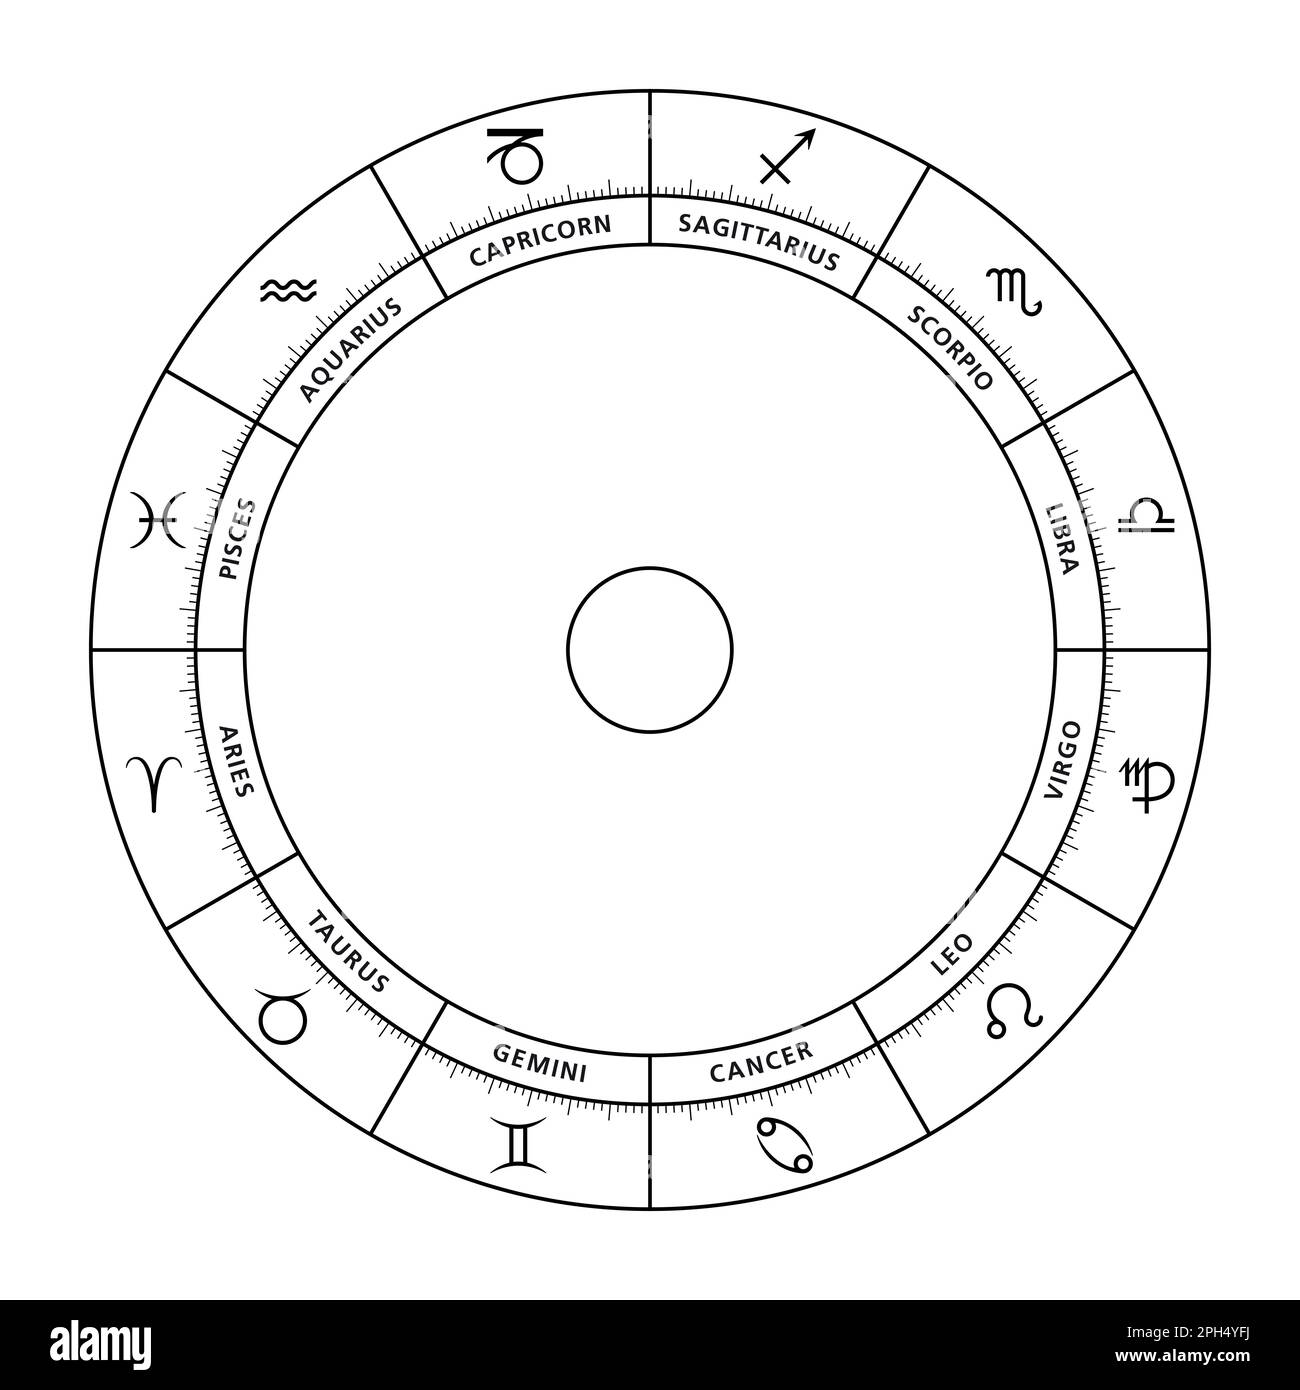 Roue du zodiaque, avec des signes astrologiques et leurs noms latins. Diagramme et cercle astrologiques avec douze types de personnalité, modes d'expression. Banque D'Images